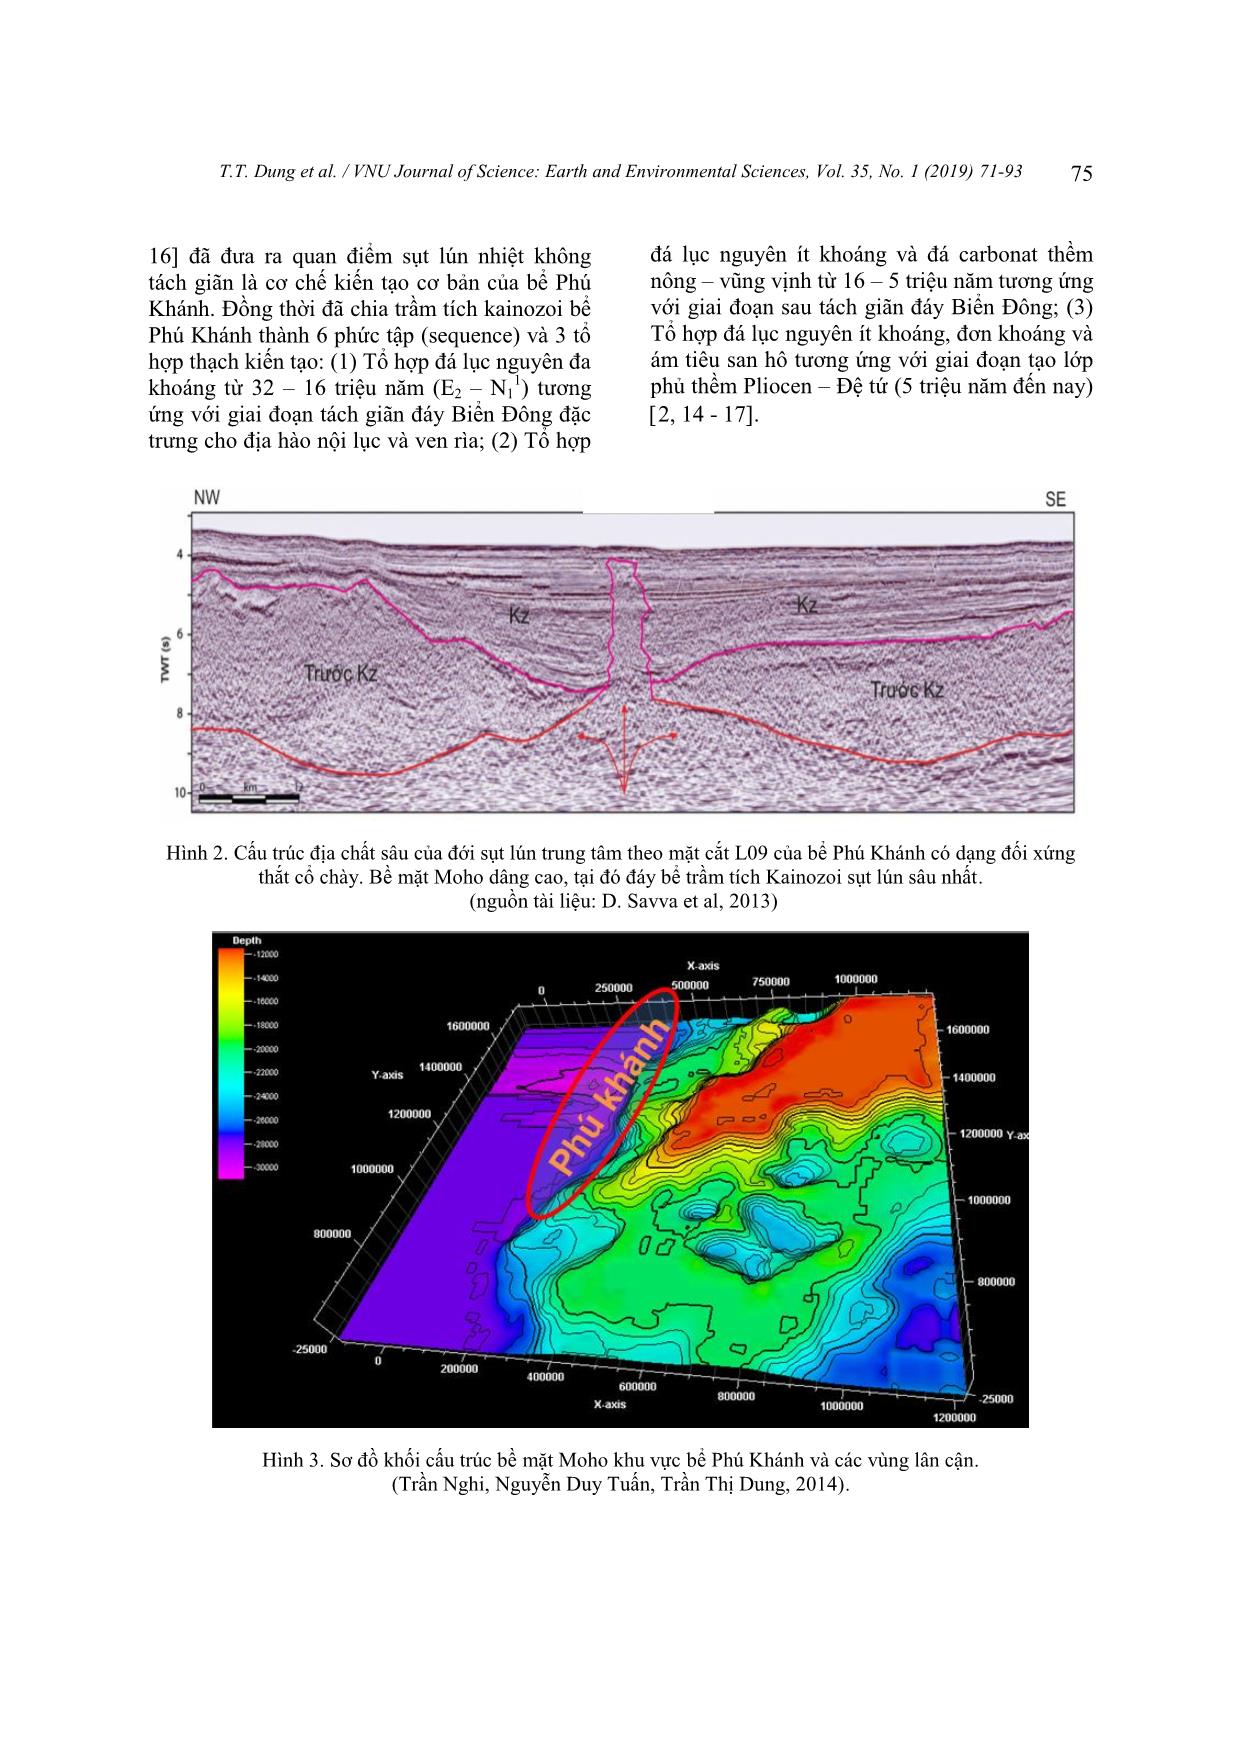 Tiến hóa cấu trúc địa chất và môi trường trầm tích Miocen khu vực bể phú khánh trang 5